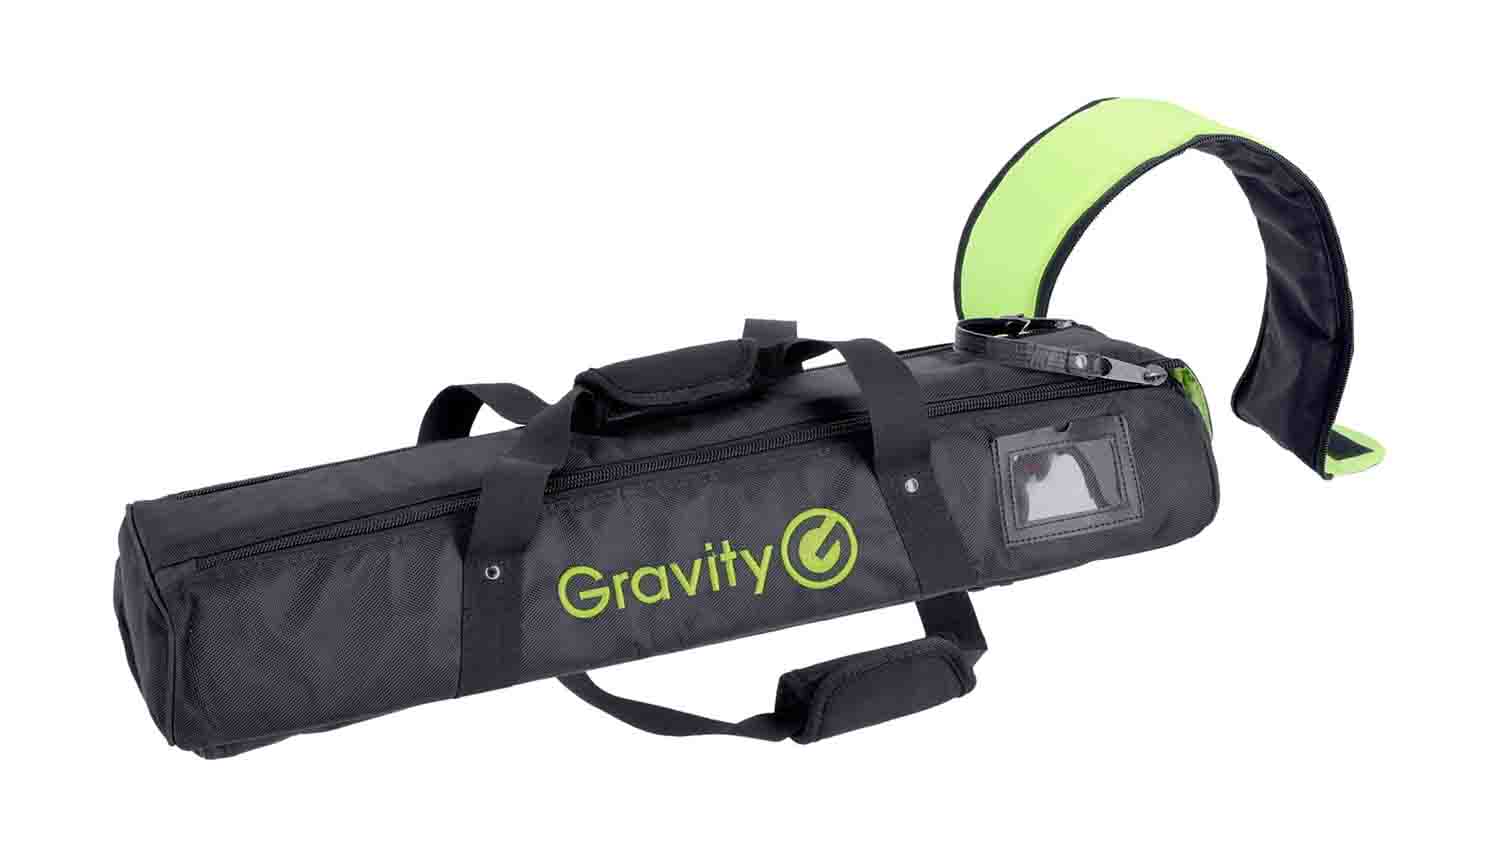 B-Stock: Gravity BG SS 2 T B Transport Bag for Two Traveler Speaker Stands by Gravity